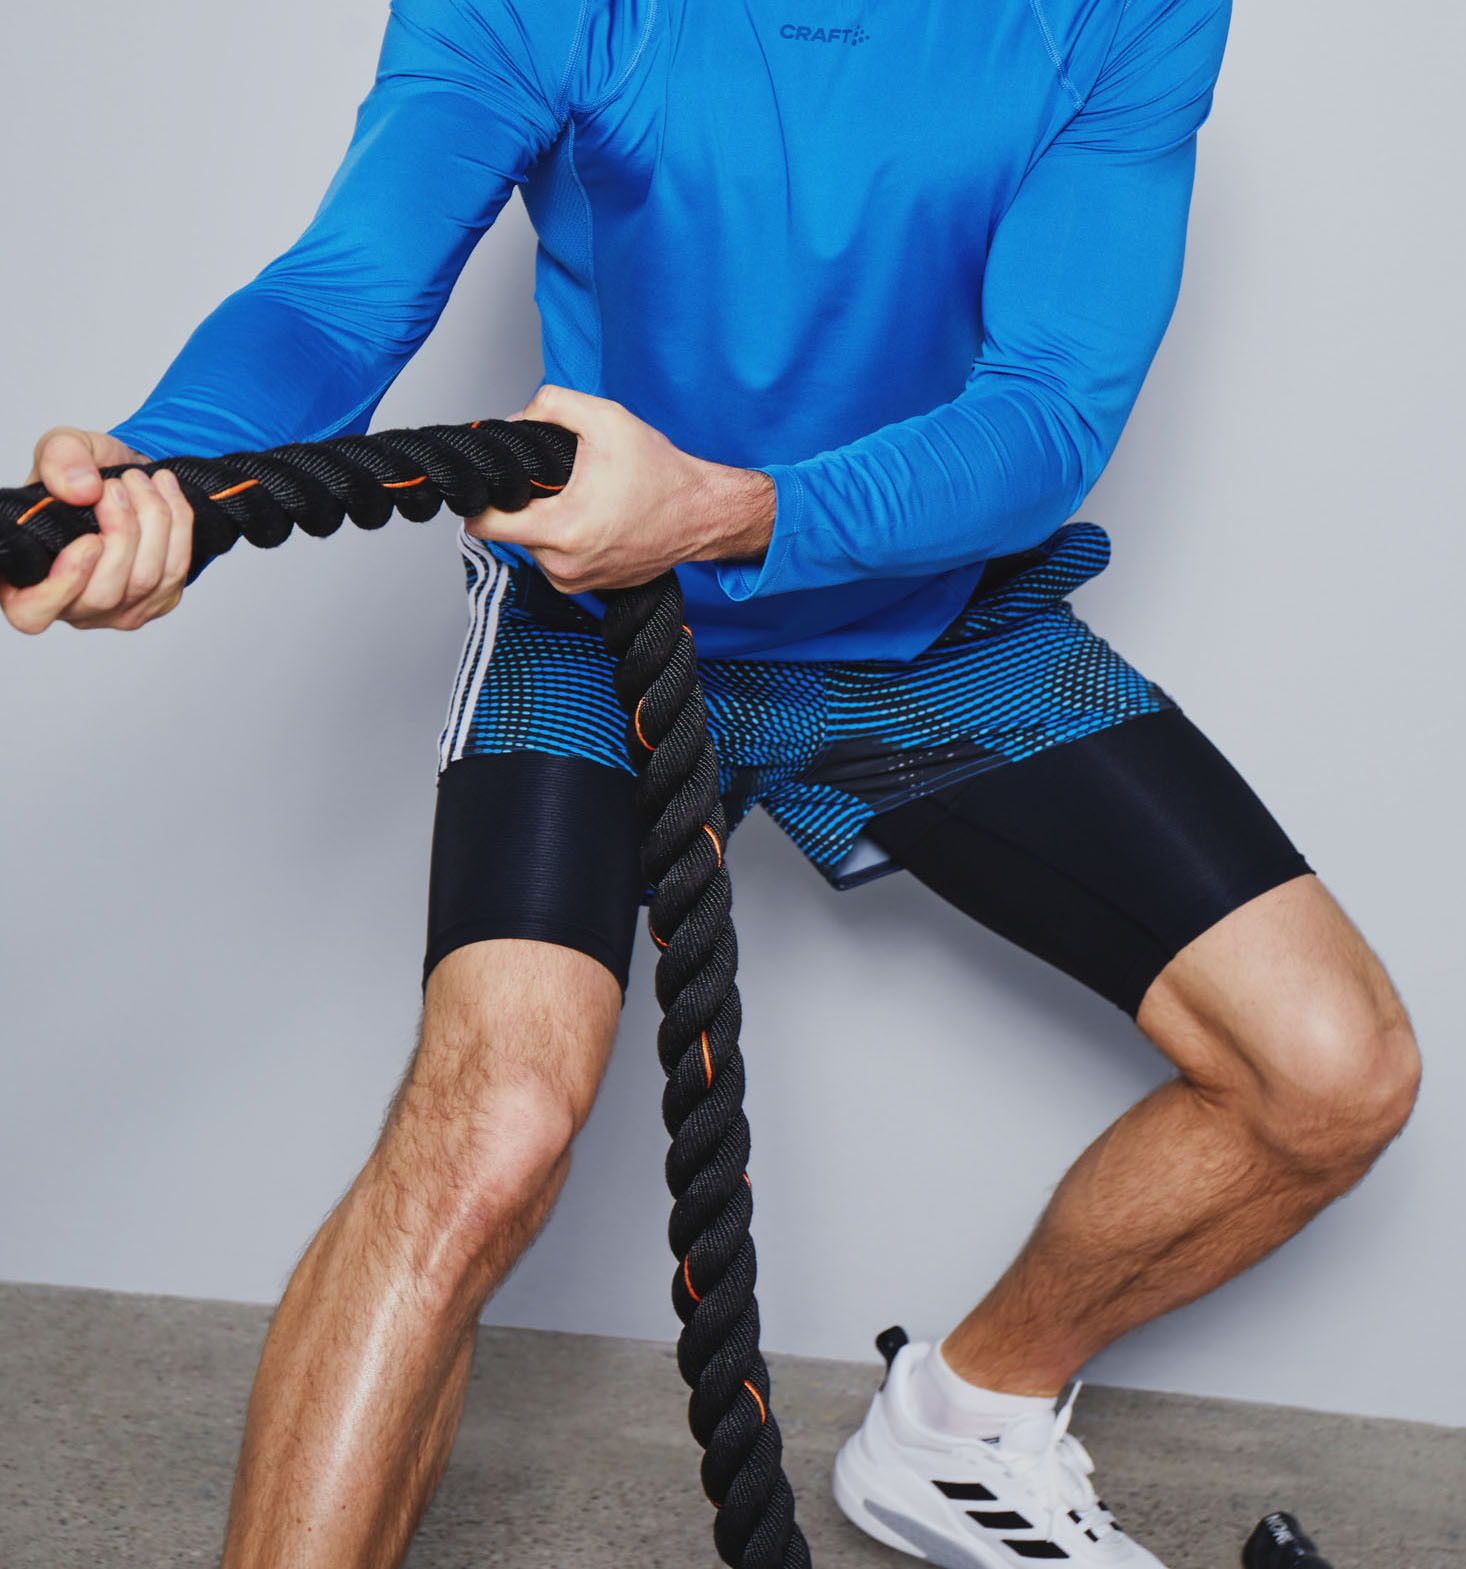 Finn de rette leggingsene og treningstightsene for deg